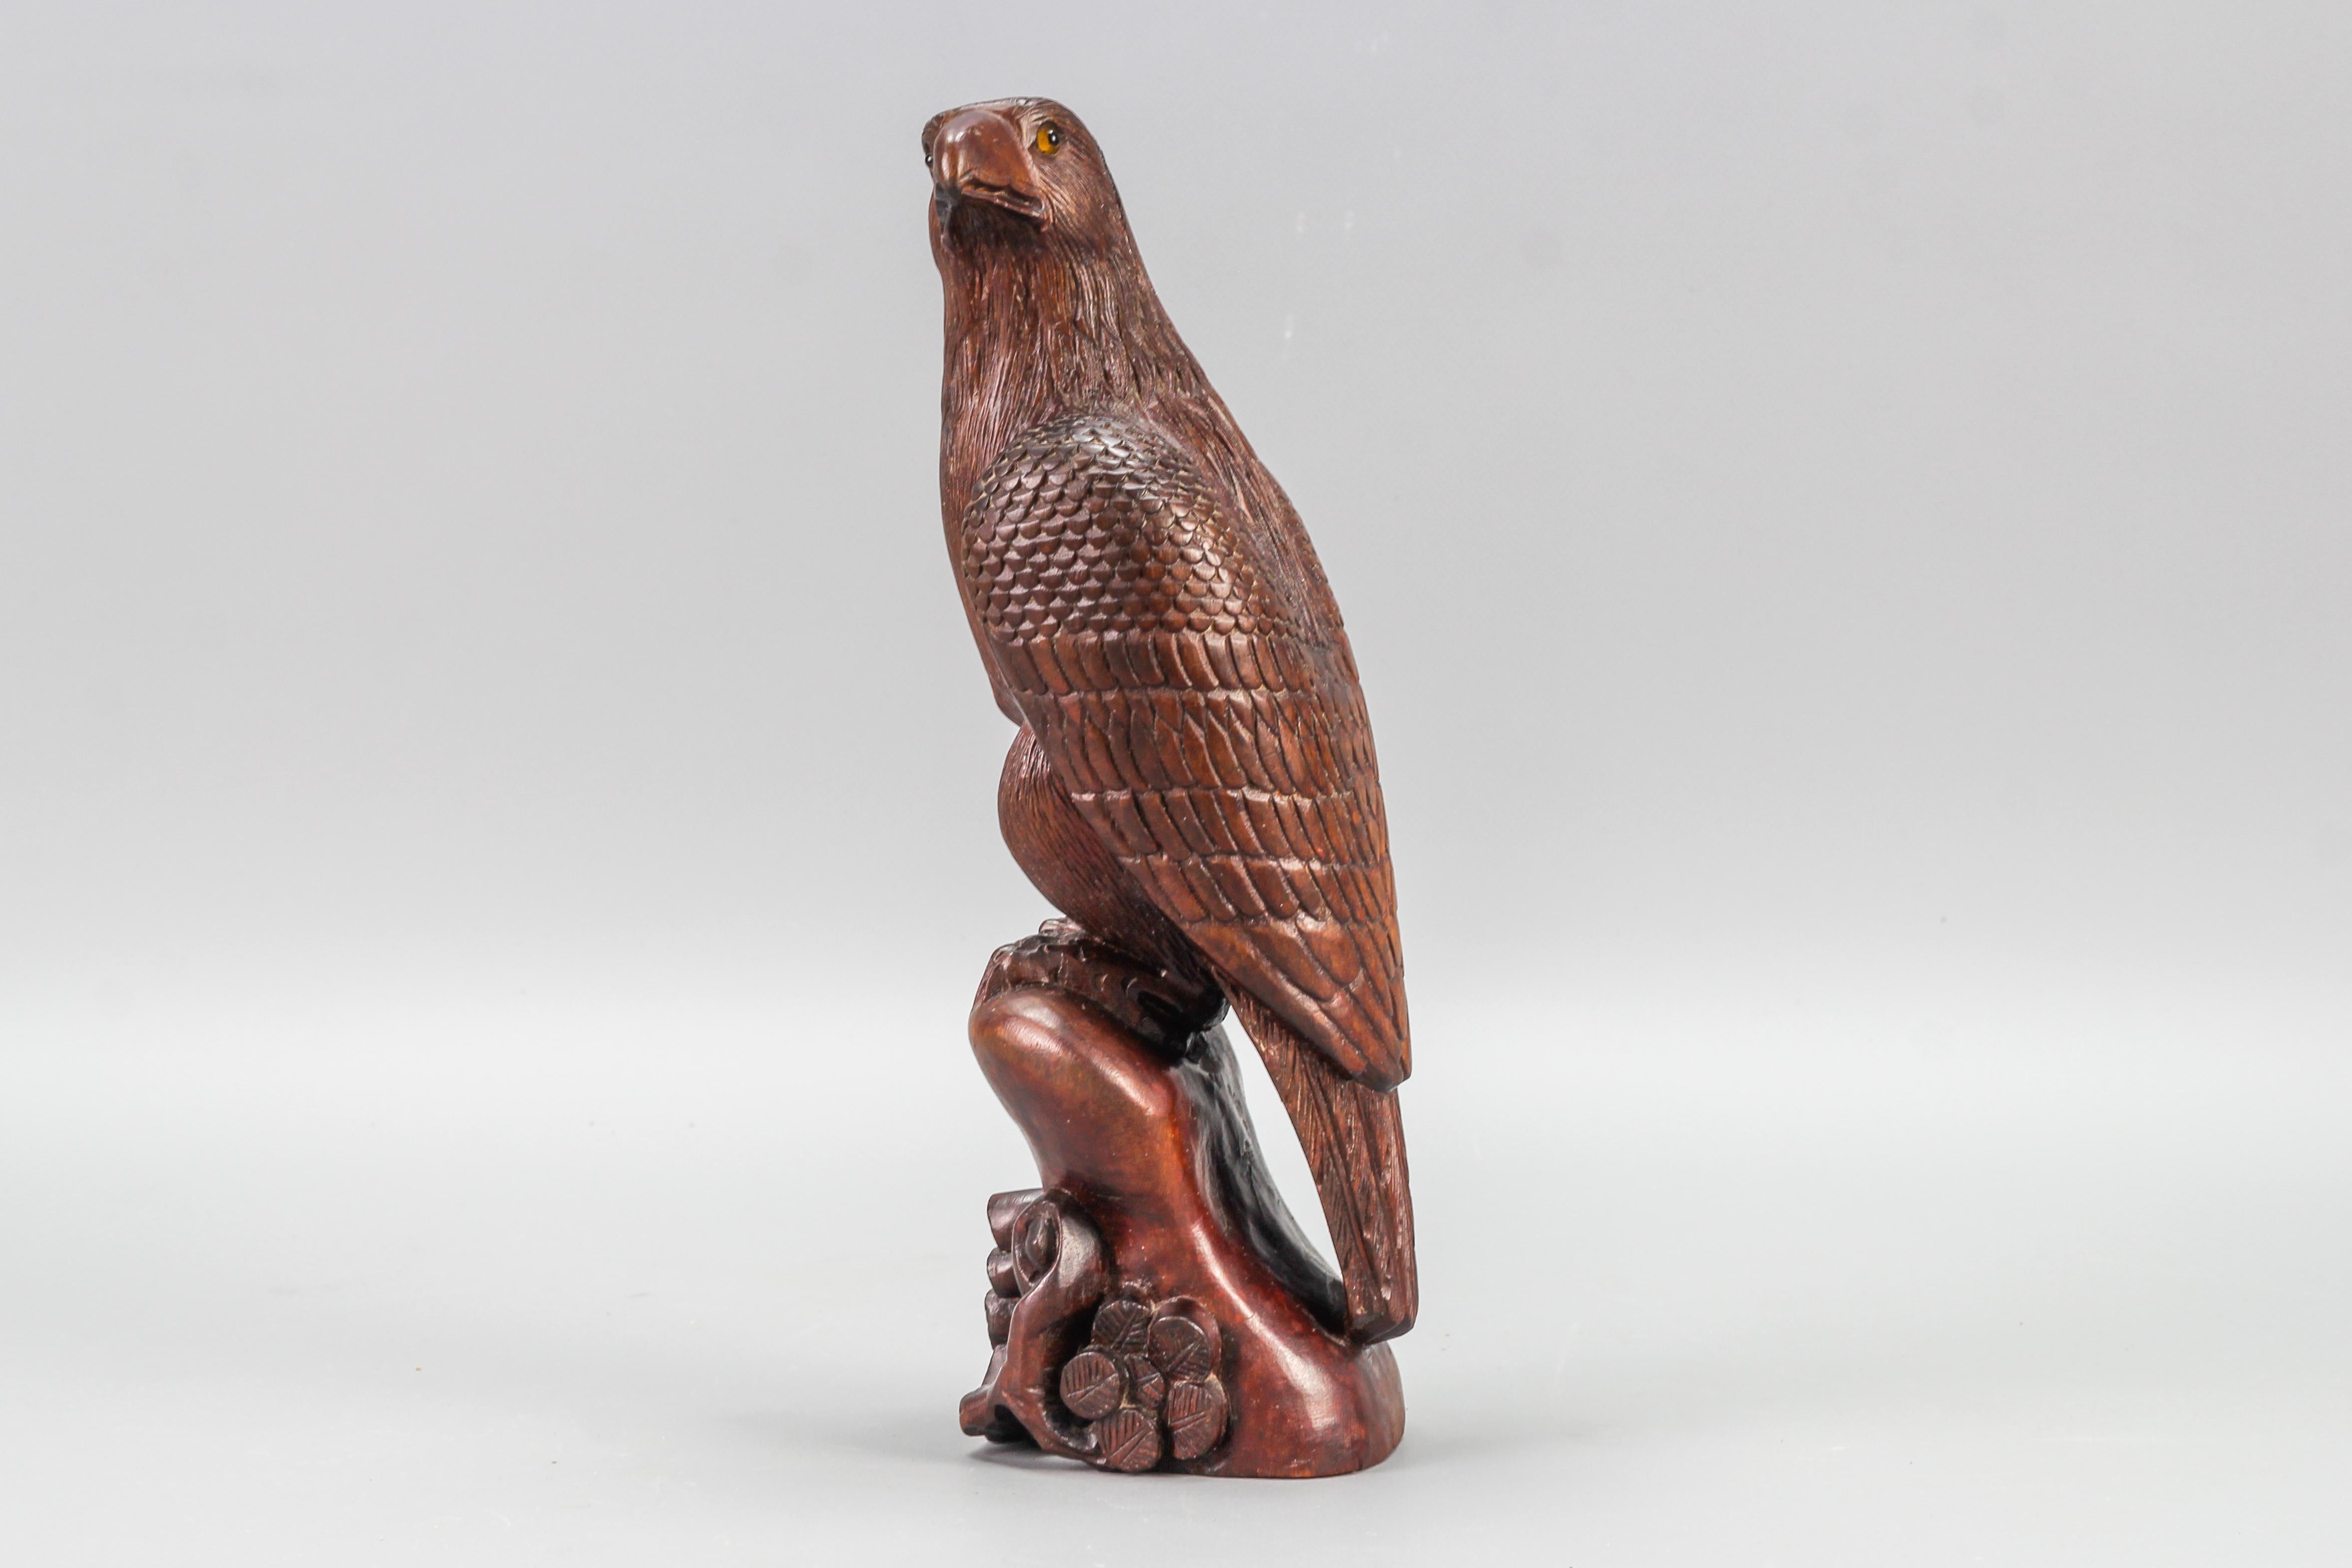 Geschnitzte Holzadler-Skulptur im Art-Déco-Stil mit Glasaugen aus den 1960er Jahren.
Diese atemberaubende, naturalistisch handgeschnitzte und braun gefärbte Adlerfigur aus Buchenholz mit Glasaugen, die auf einem hölzernen Stamm sitzt, der mit einem